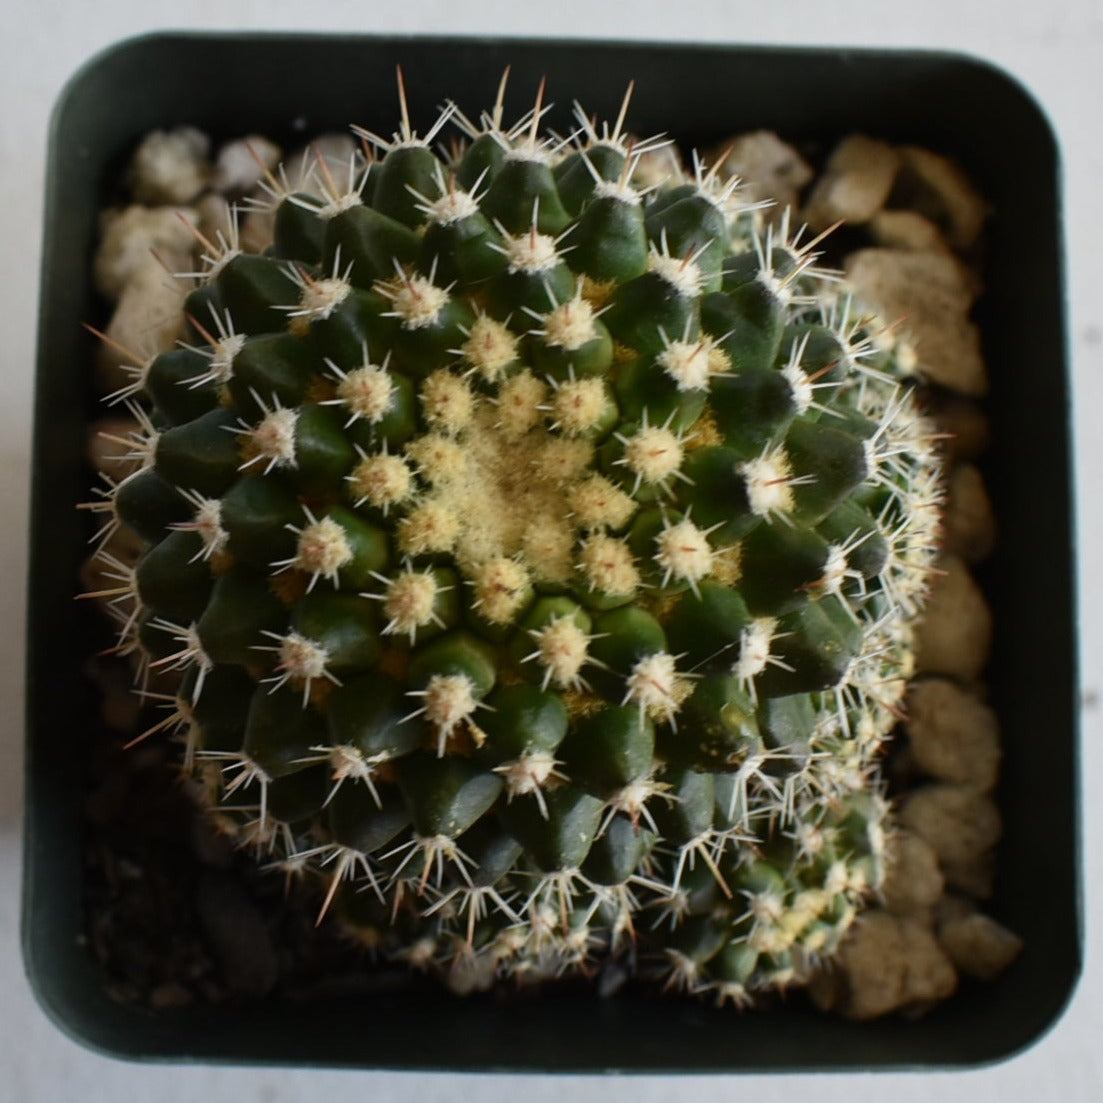 Mammillaria voburnensis Live Cactus In 4 Inch